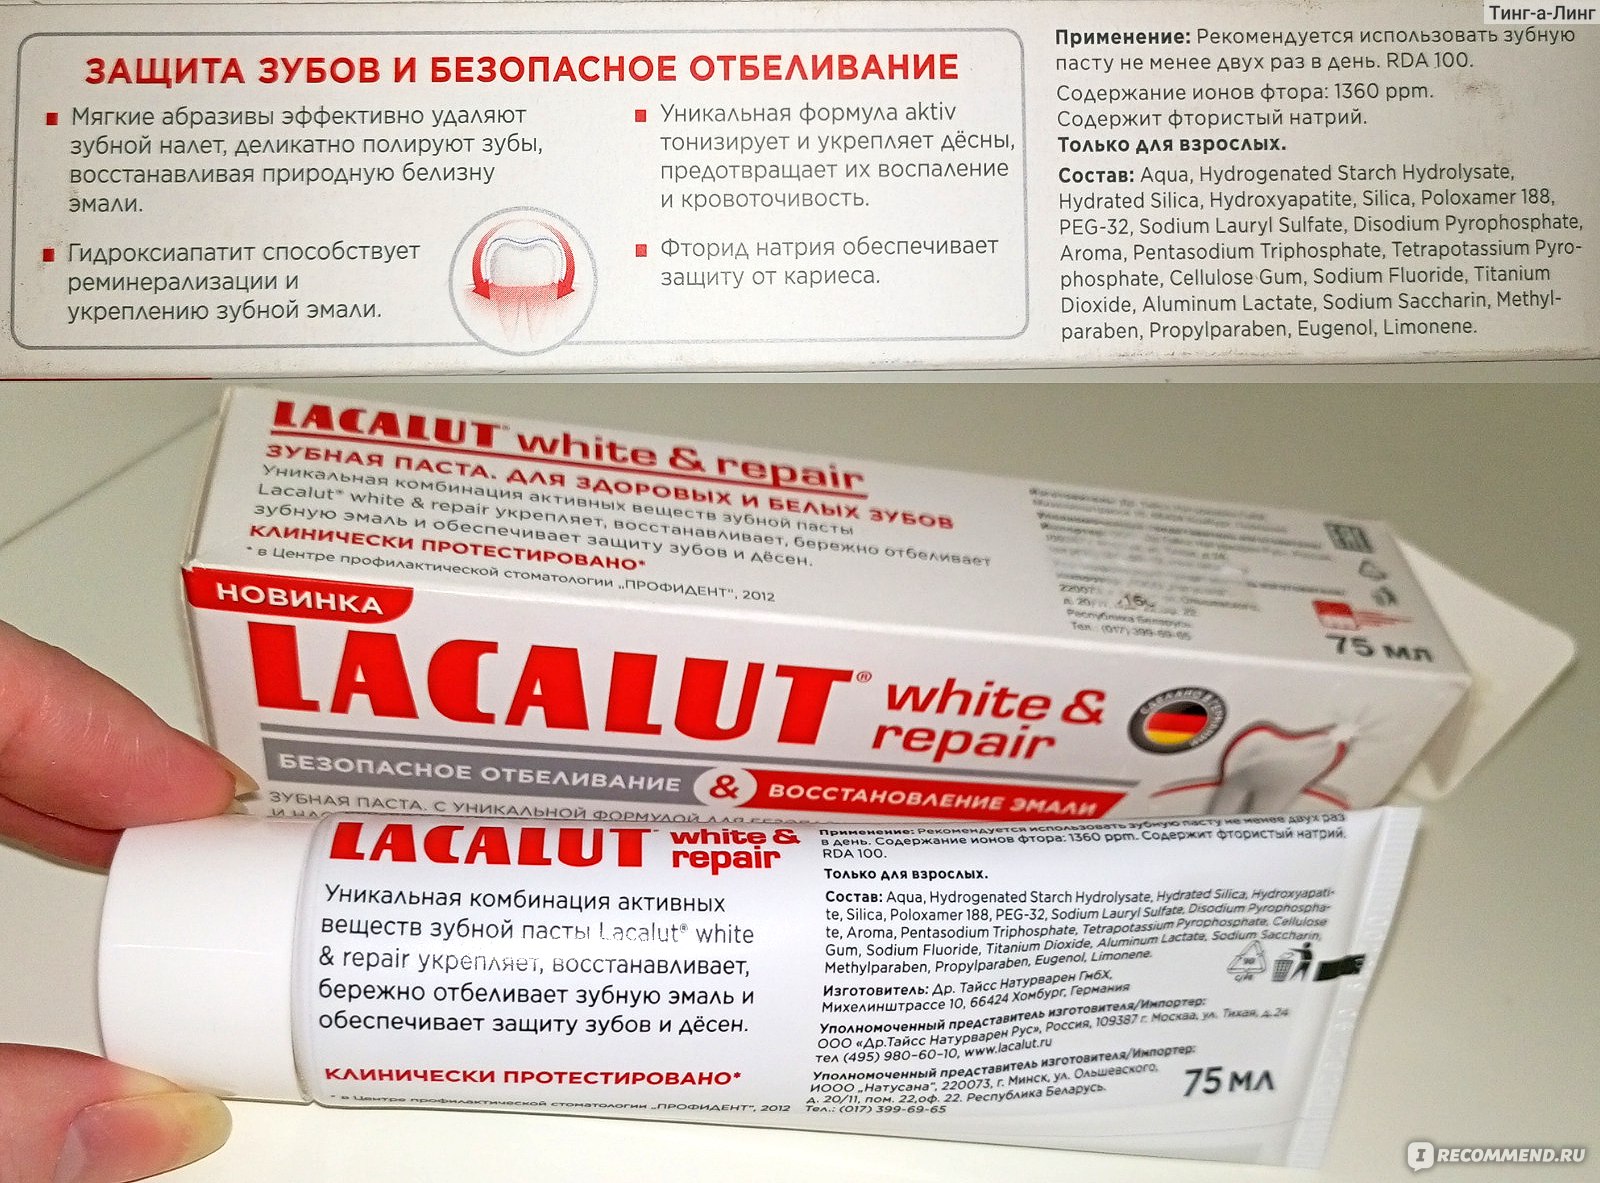 Lacalut White & Repair информация от производителя